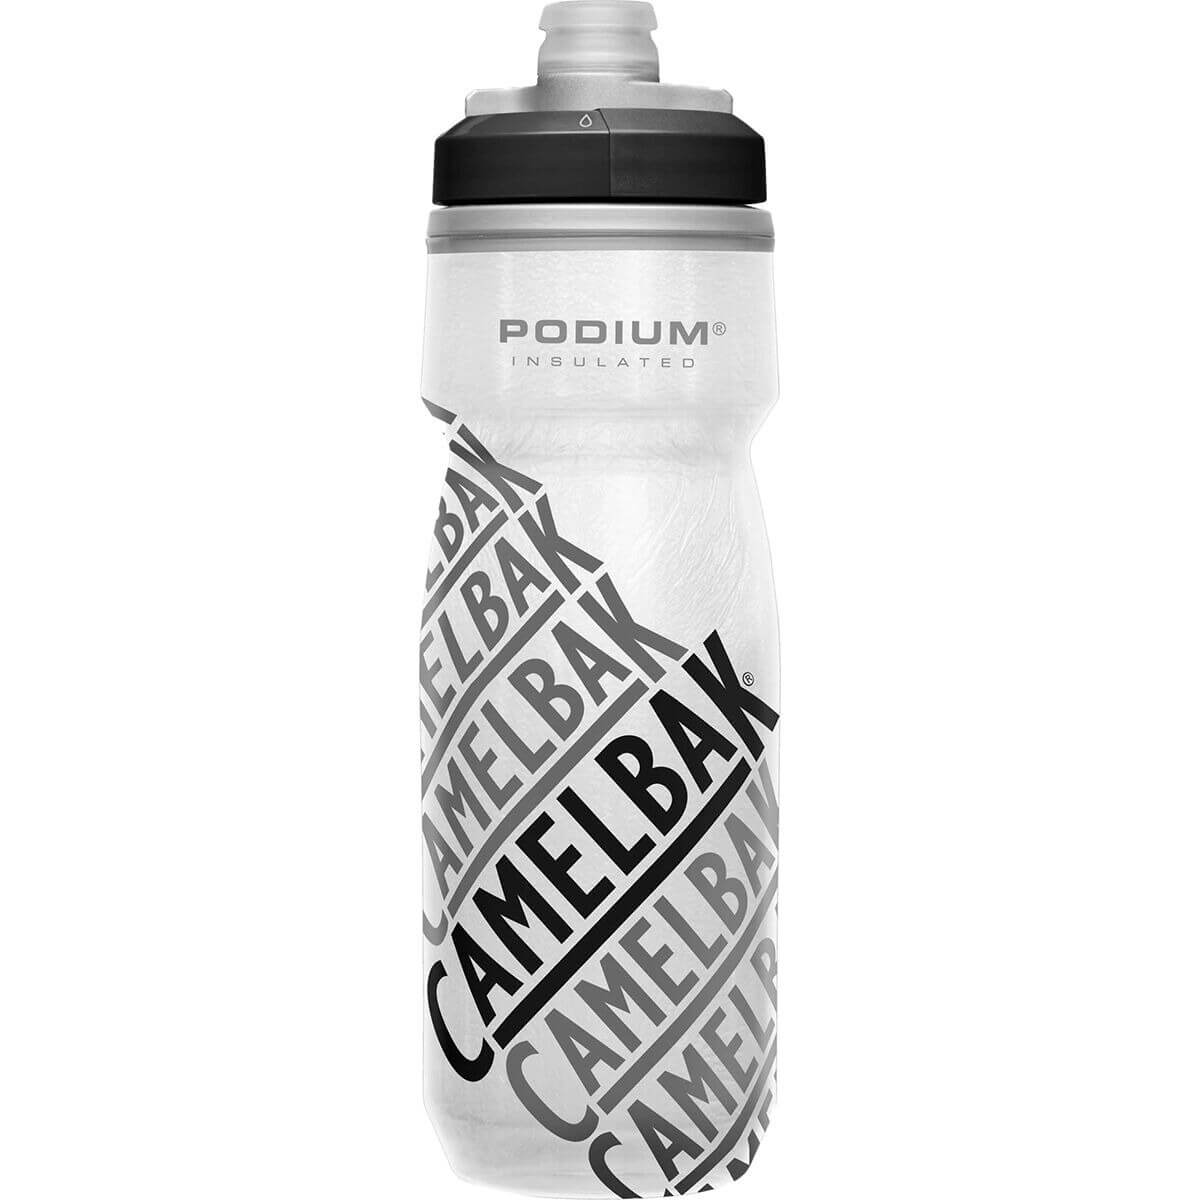 Бутылка для воды CamelBak Podium Chill Insulated 630 мл, белый/серый точечный очиститель пылесосы емкостью 51 унция